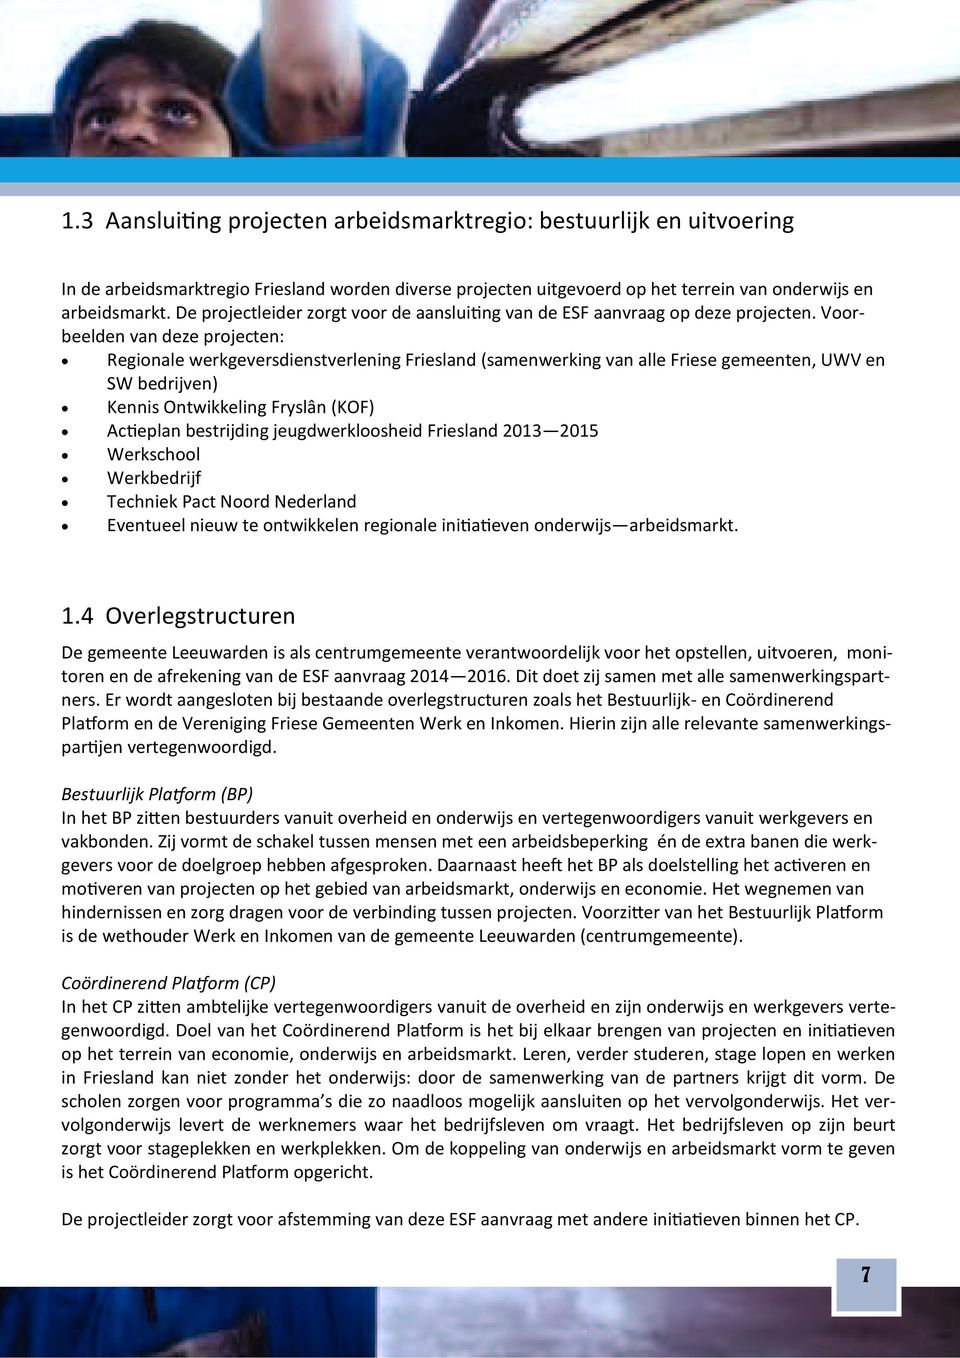 Voor beelden van deze projecten: Regionale werkgeversdienstverlening Friesland (samenwerking van alle Friese gemeenten, UWV en SW bedrijven) Kennis Ontwikkeling Fryslân (KOF) Ac eplan bestrijding